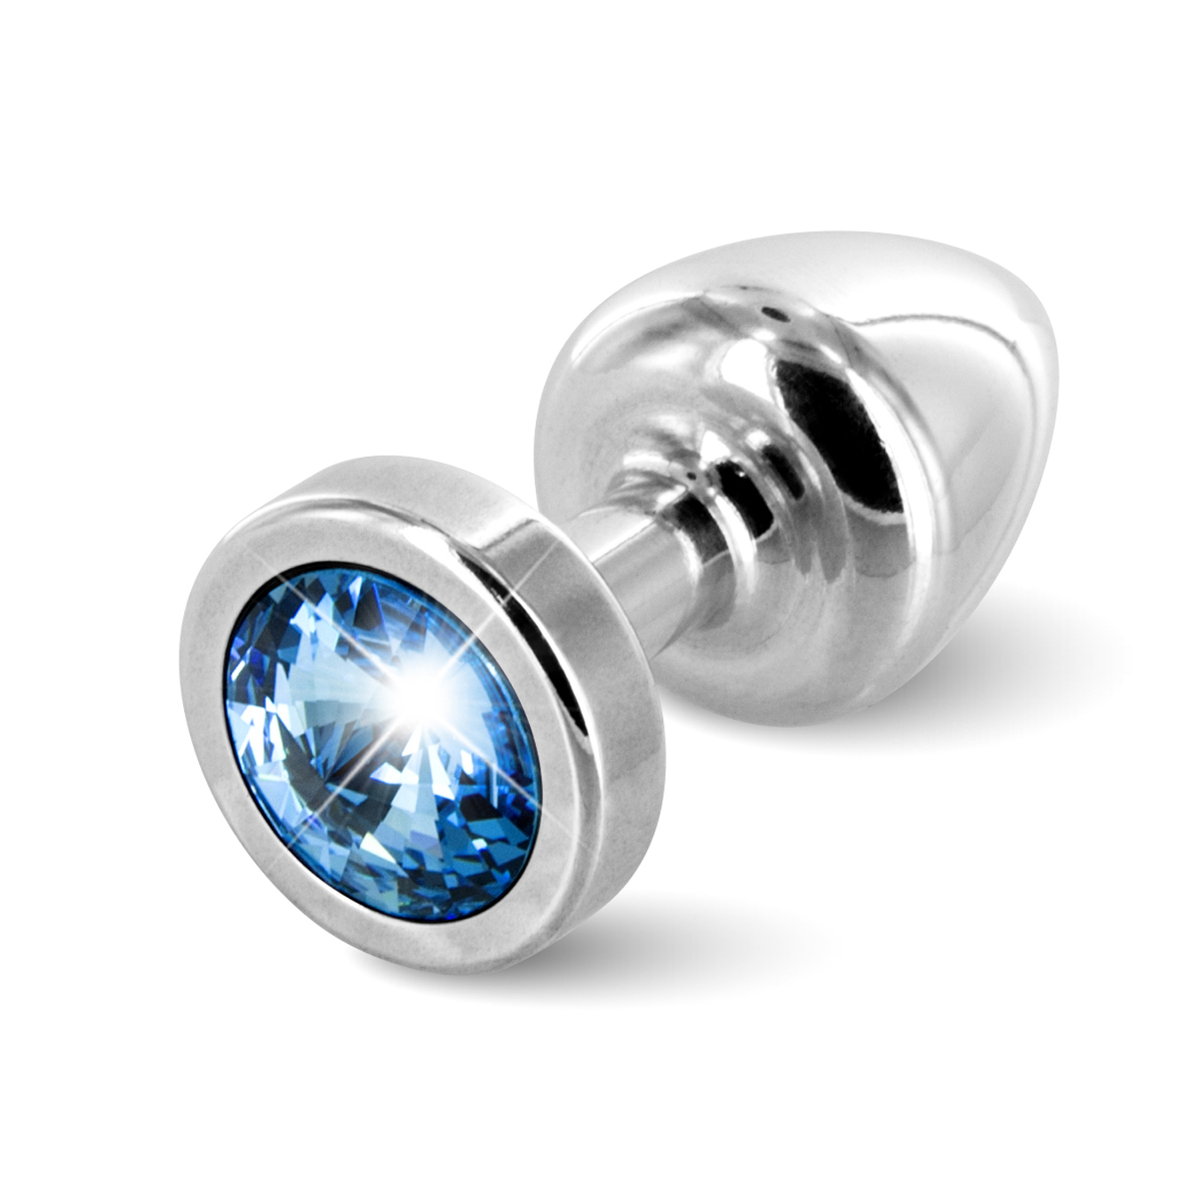 Plug Anale in alluminio silver con cristallo azzurro Swarovsky - Diogol